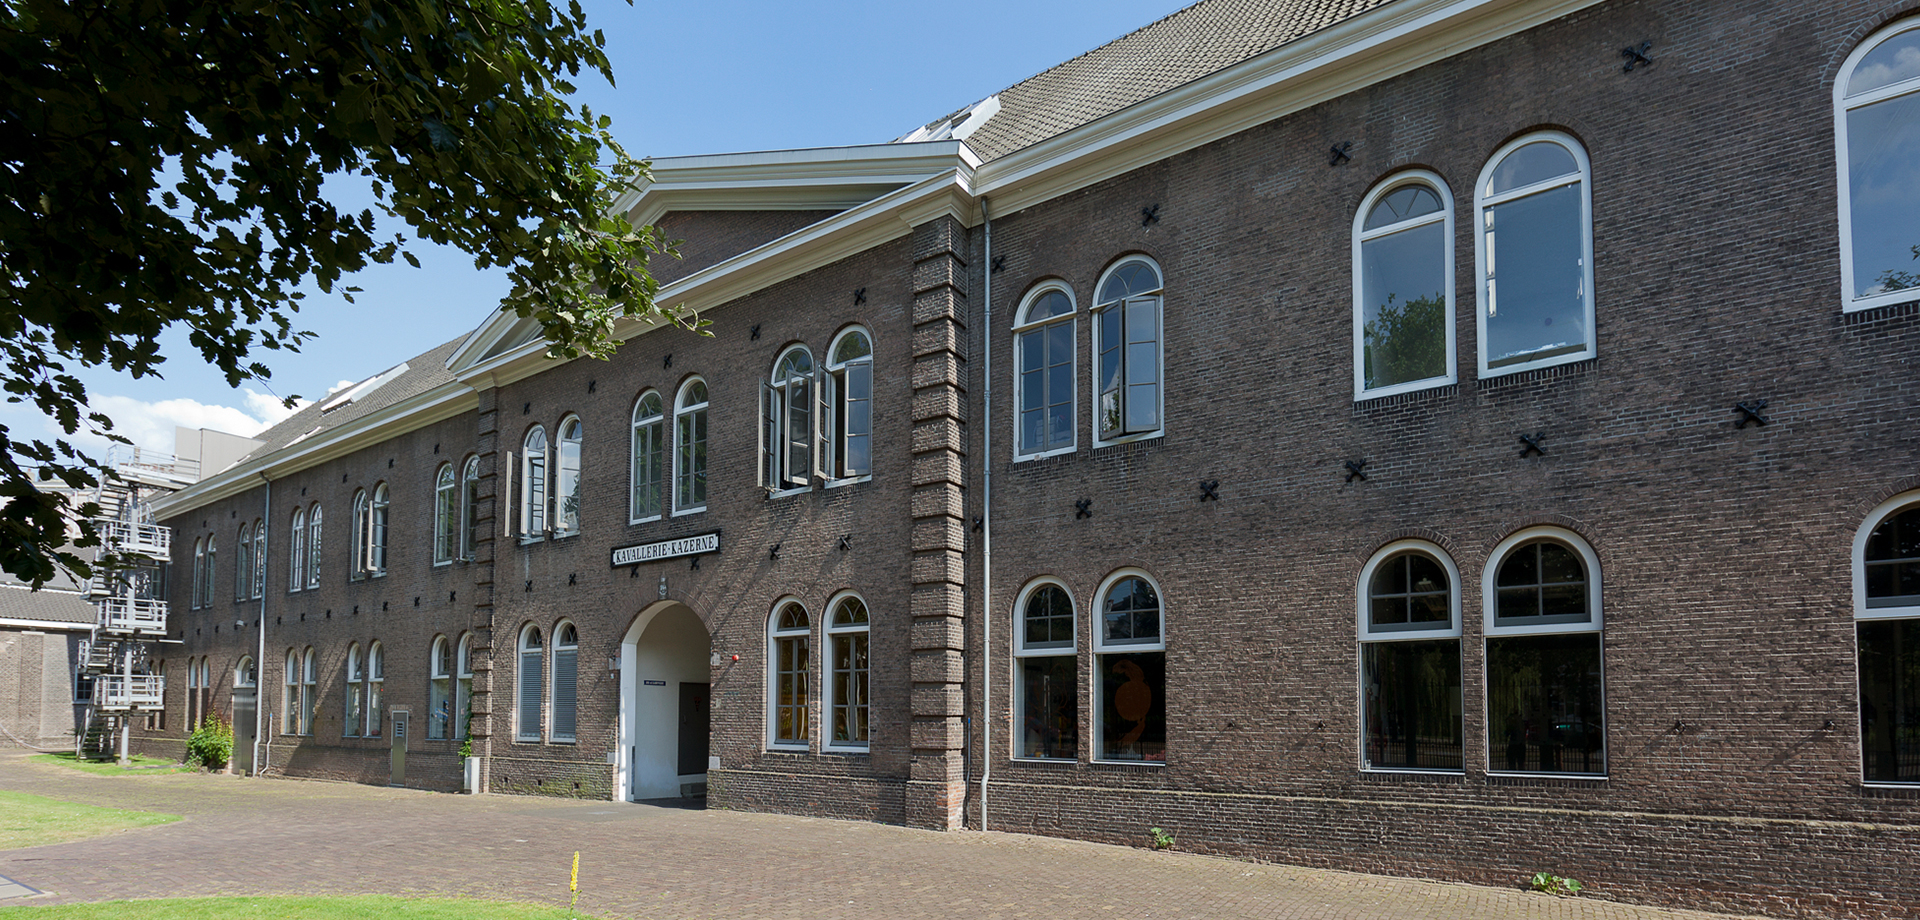 The Rijksakademie van beeldende kunsten Amsterdam